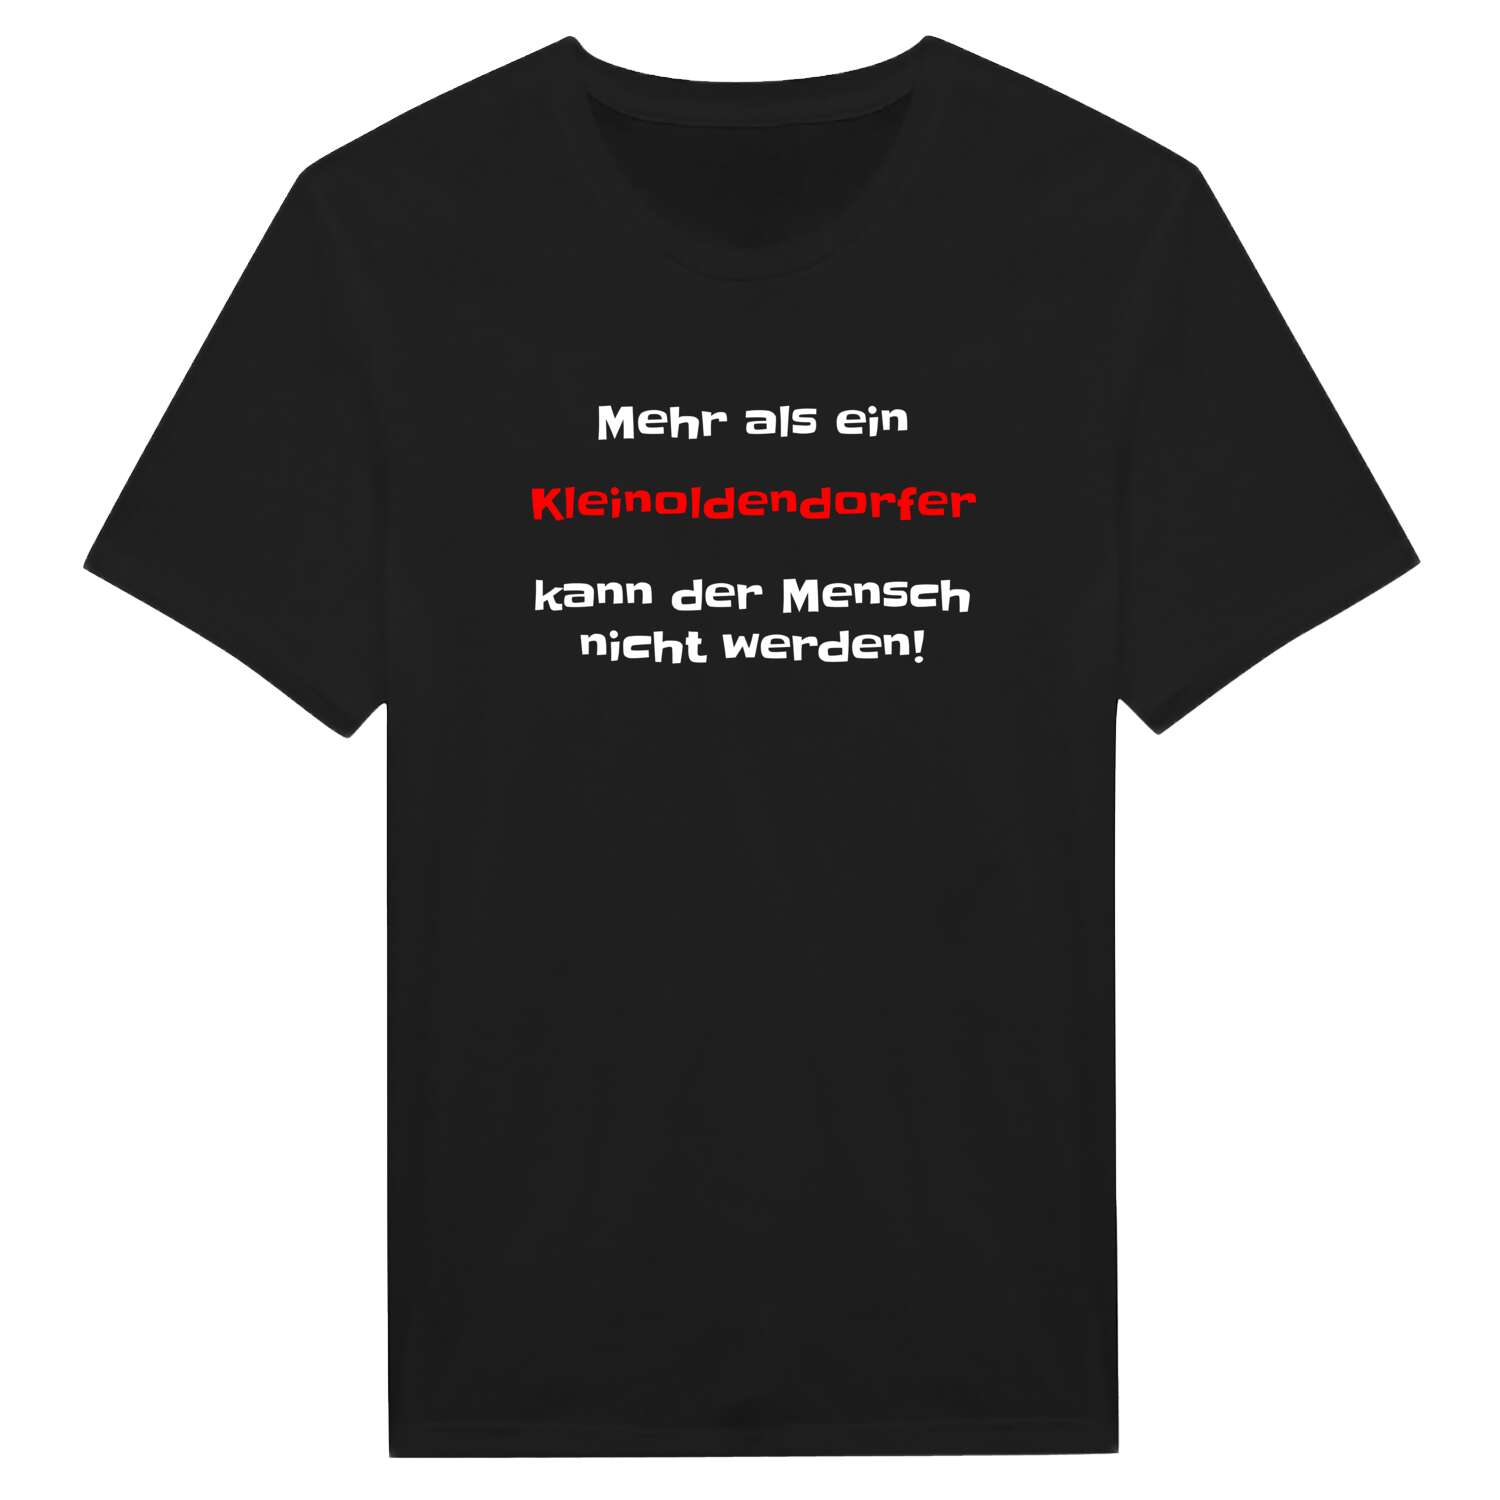 Kleinoldendorf T-Shirt »Mehr als ein«